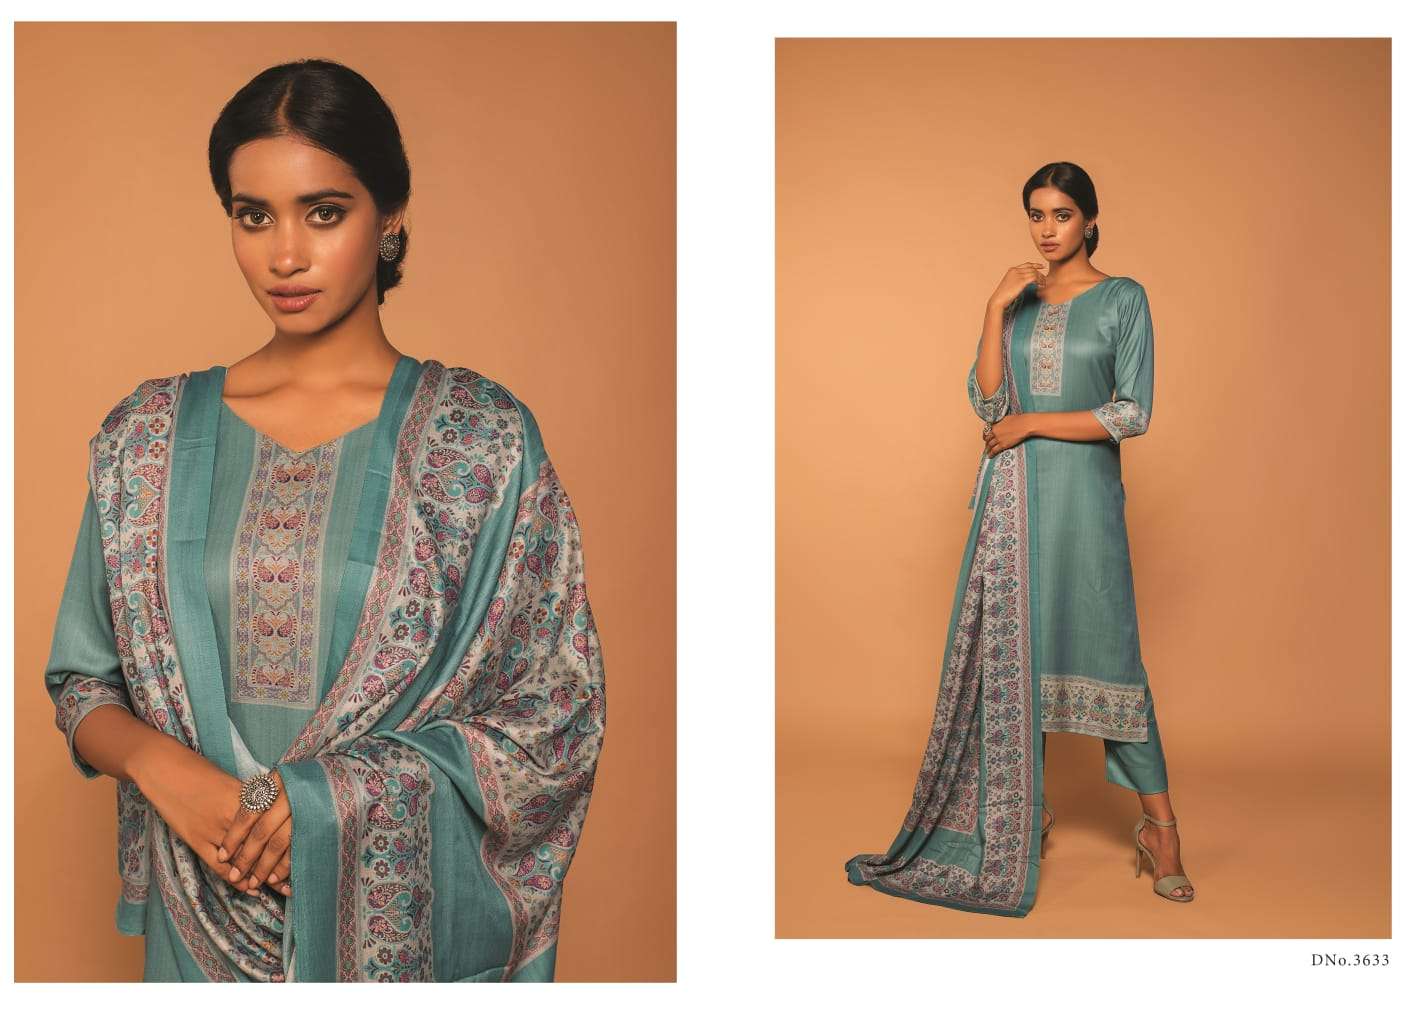 rivaa vaani 3629-3635 series pashmina printed winter wear salwar suits wholesaler surat